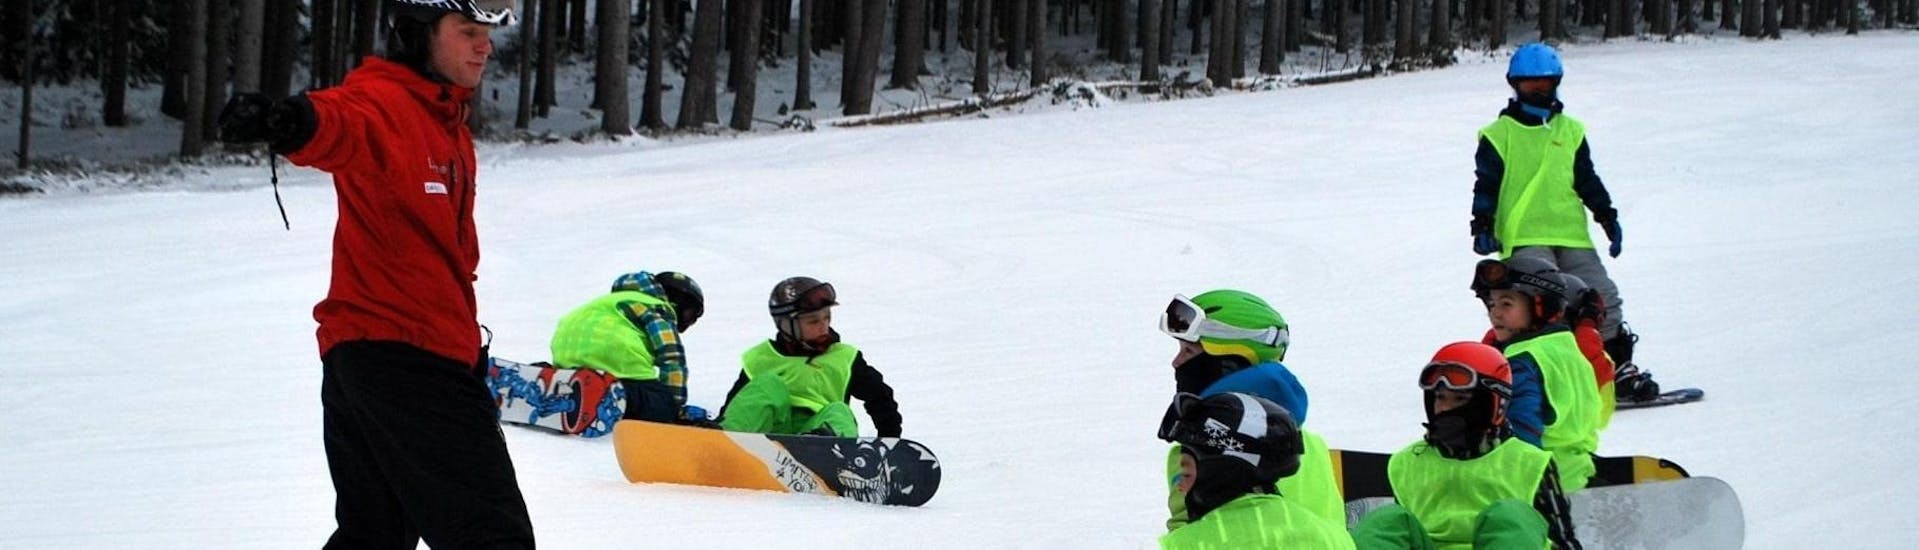 Snowboardkurs für Kinder (8-15 Jahre) - Gruppenunterricht.